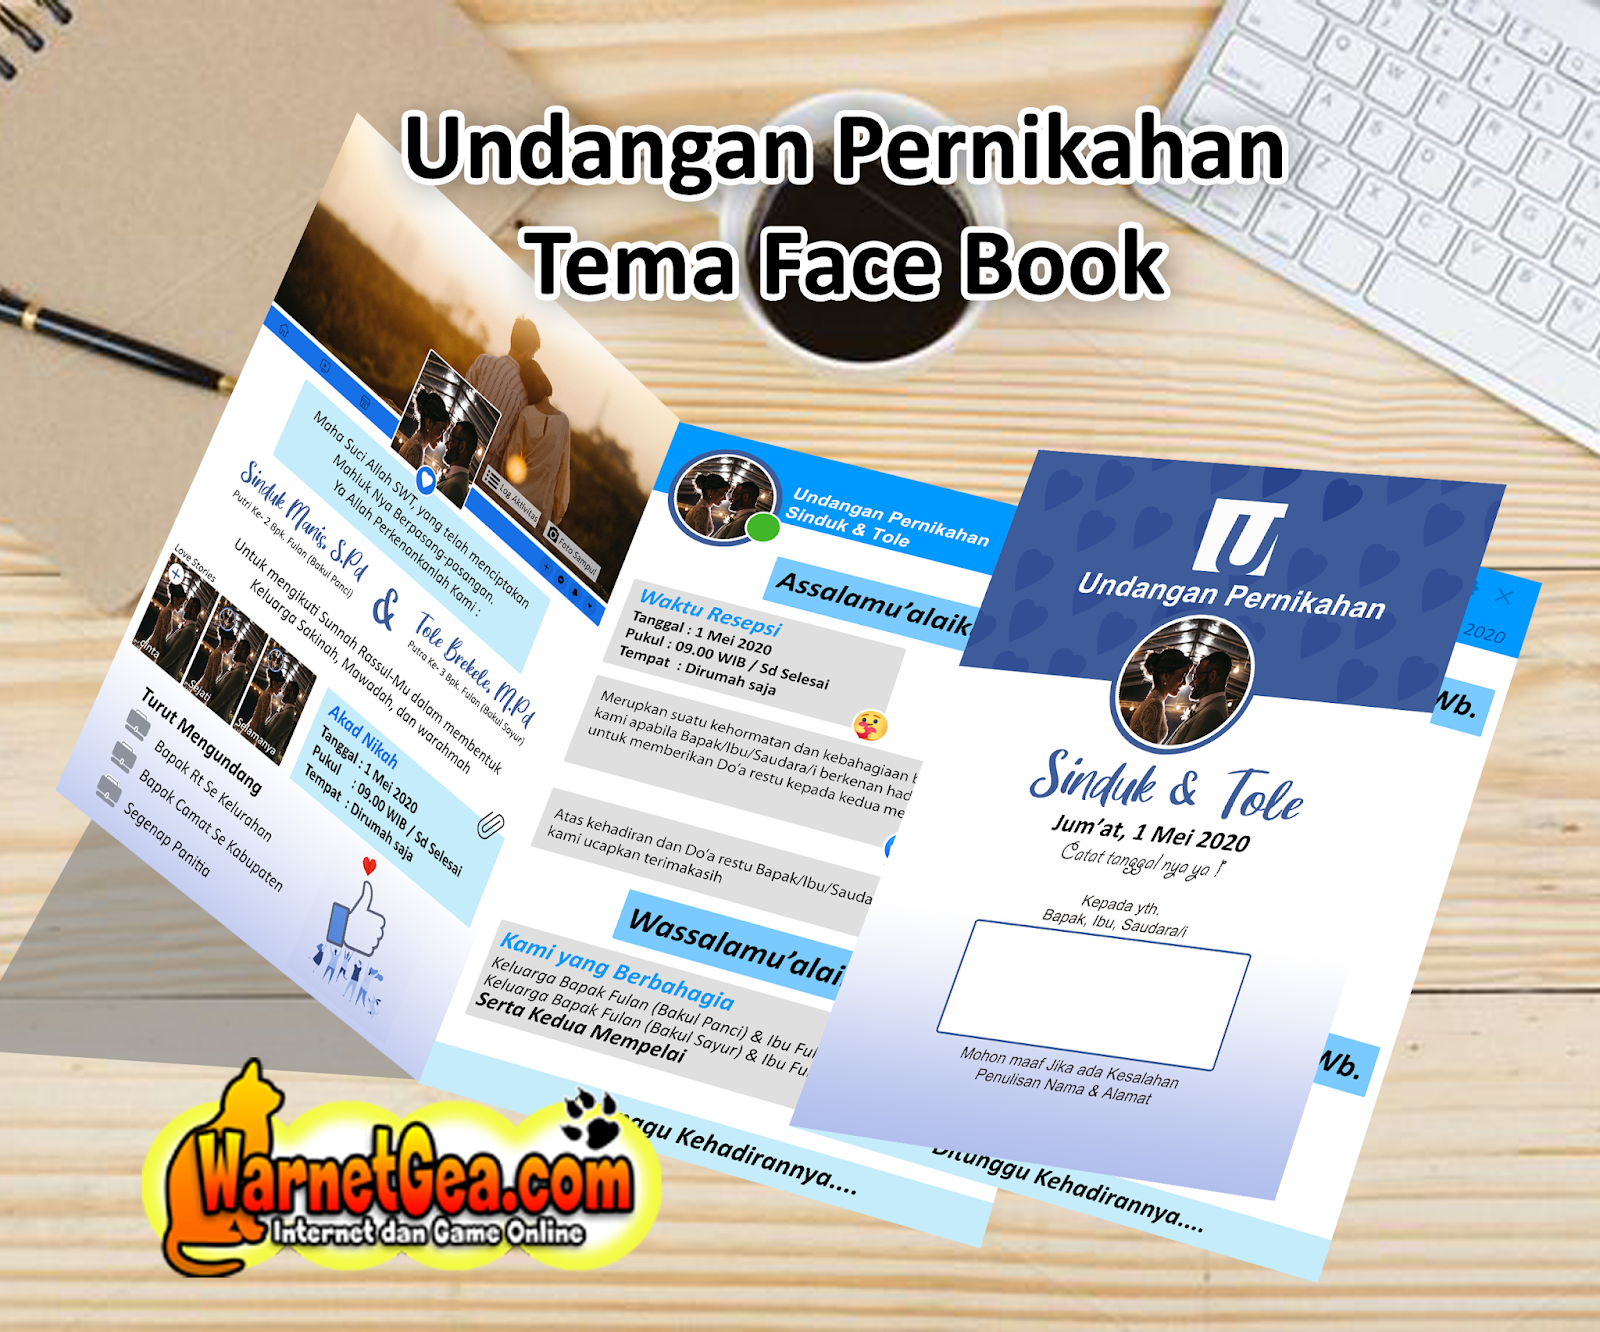 Download Undangan Pernikahan Bertema Facebook File Psd Gratis Warnetgea Com Online Gaming Browsing PSD Mockup Templates